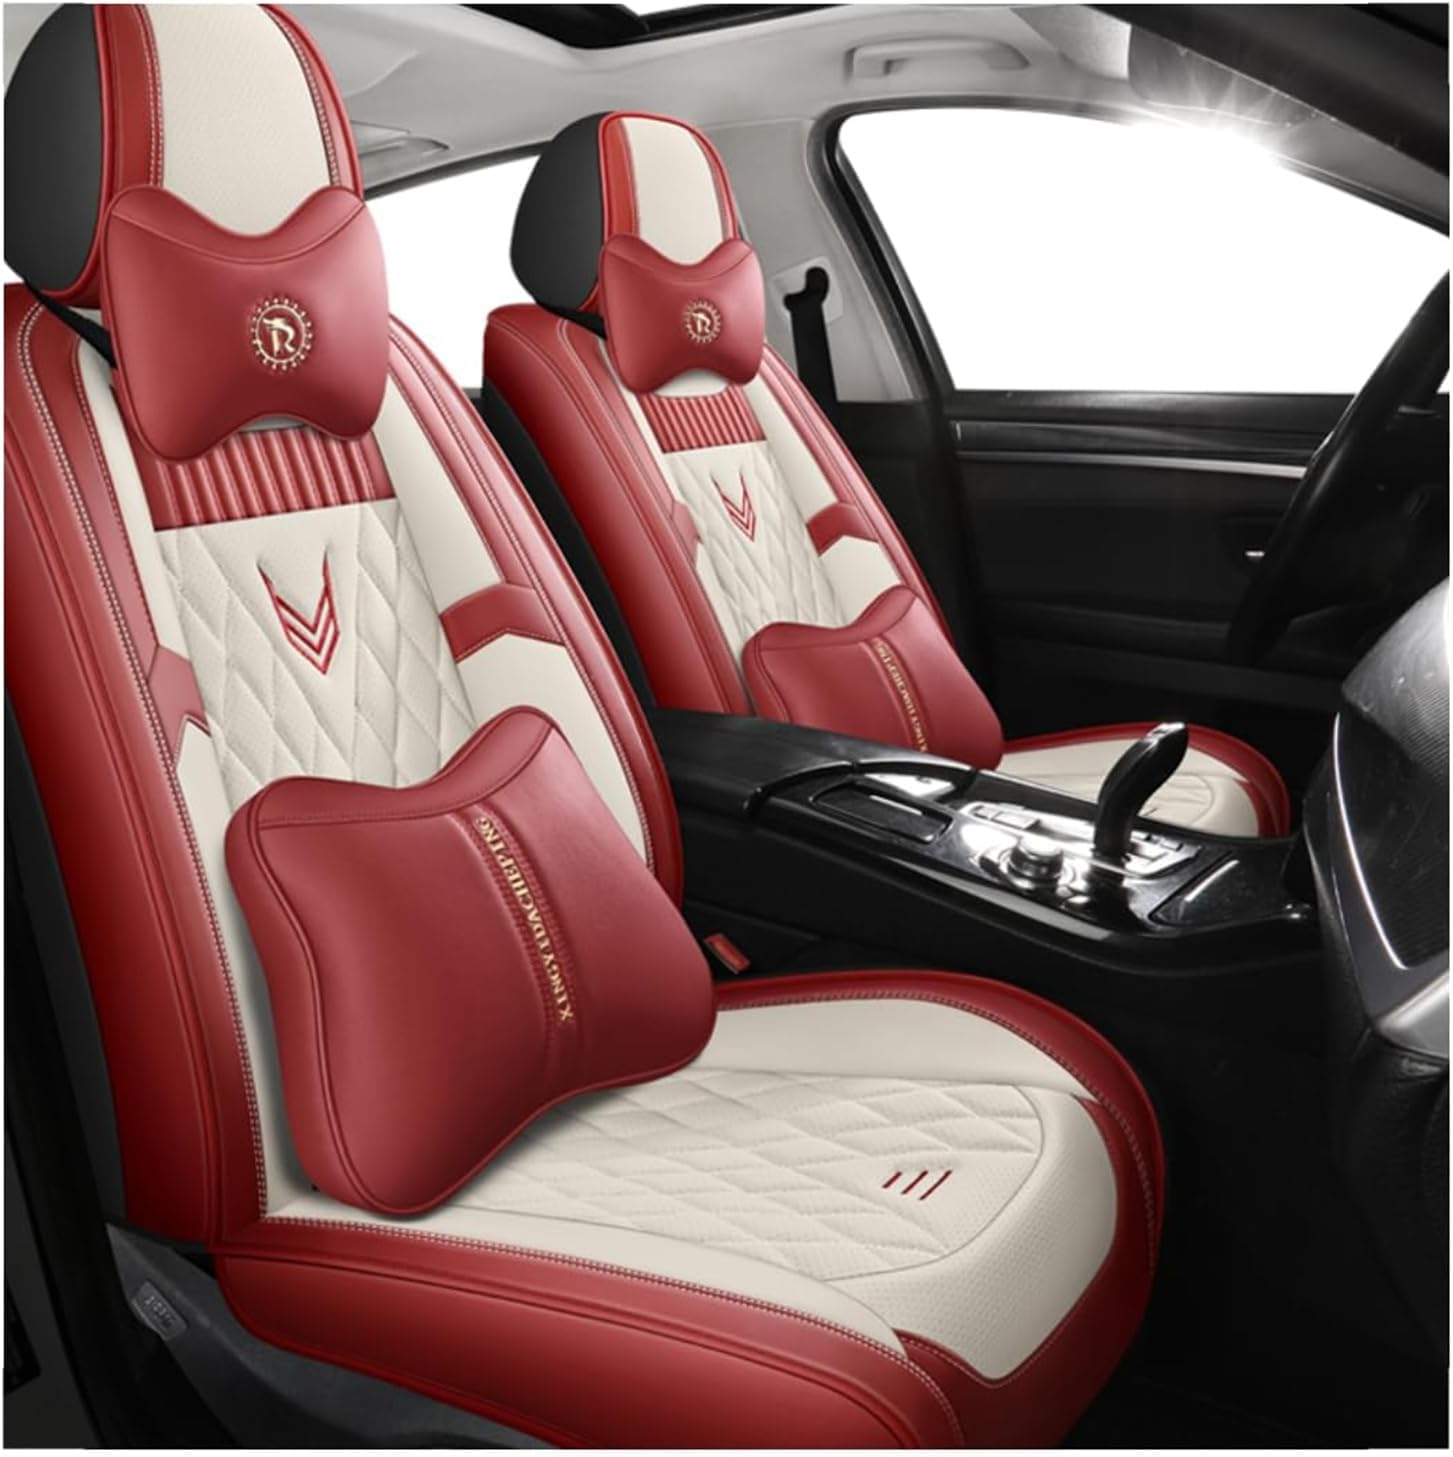 ZXKYLFFF Autositzbezüge für Xc90, S60, S80, V40, V50, V70, Vorder- und Rücksitze schützen den Innenraum, rosa Luxus von ZXKYLFFF